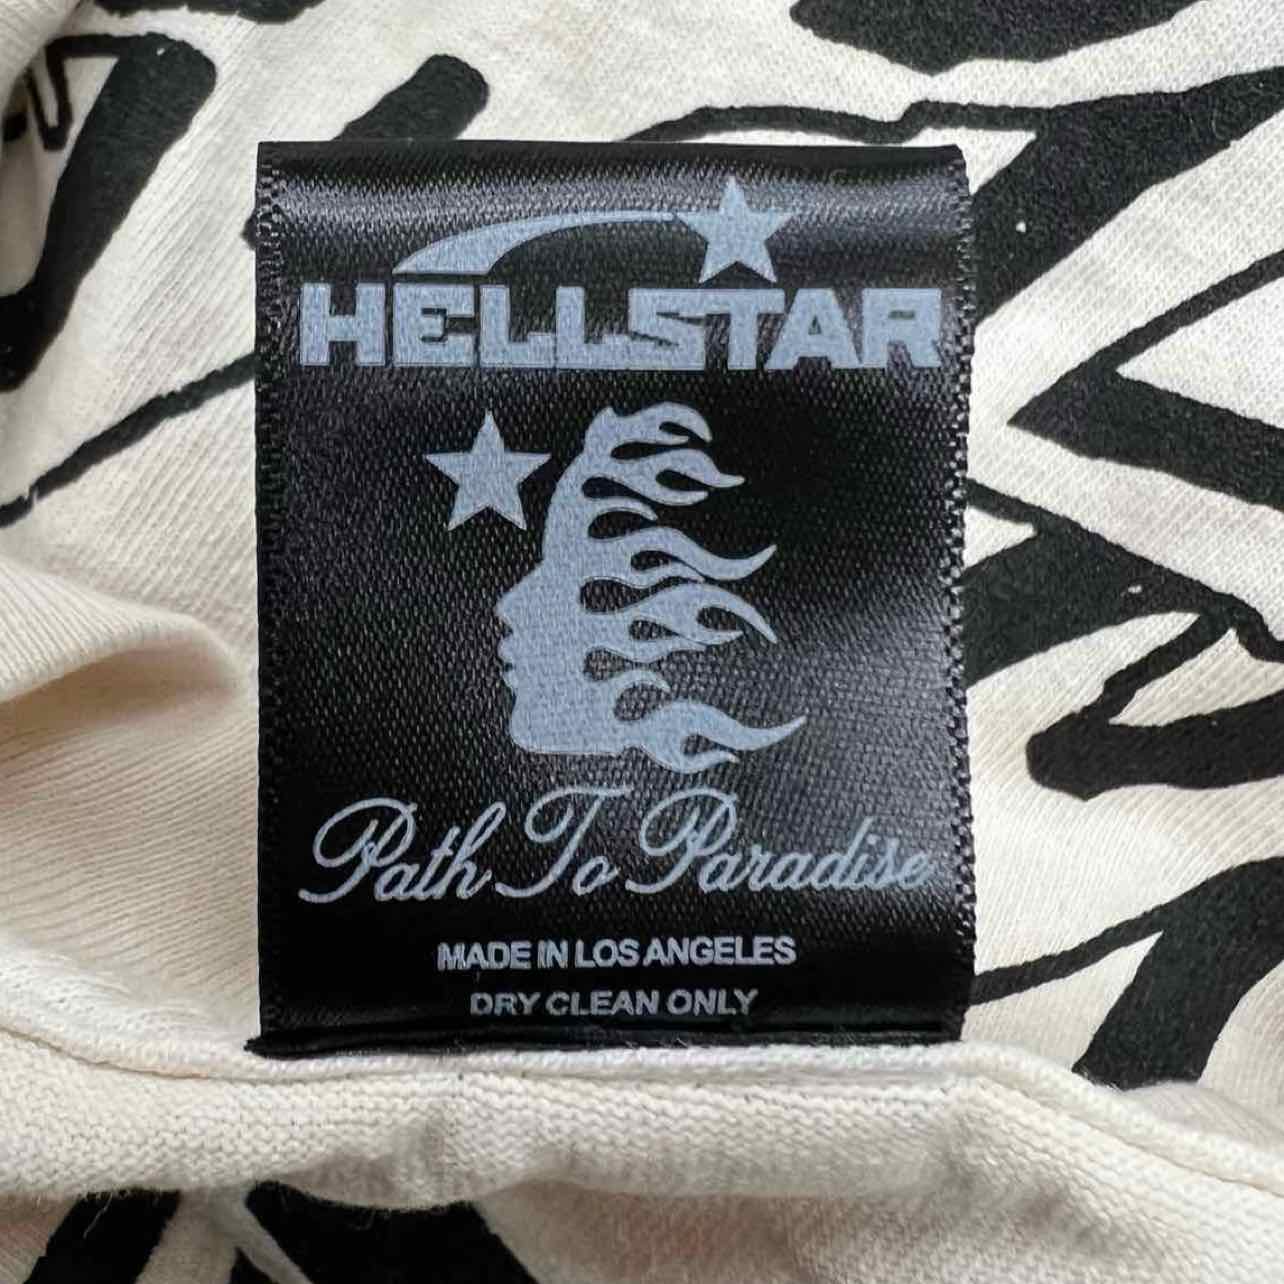 Hellstar T-Shirt &quot;RECORDS&quot; Cream New Size 2XL